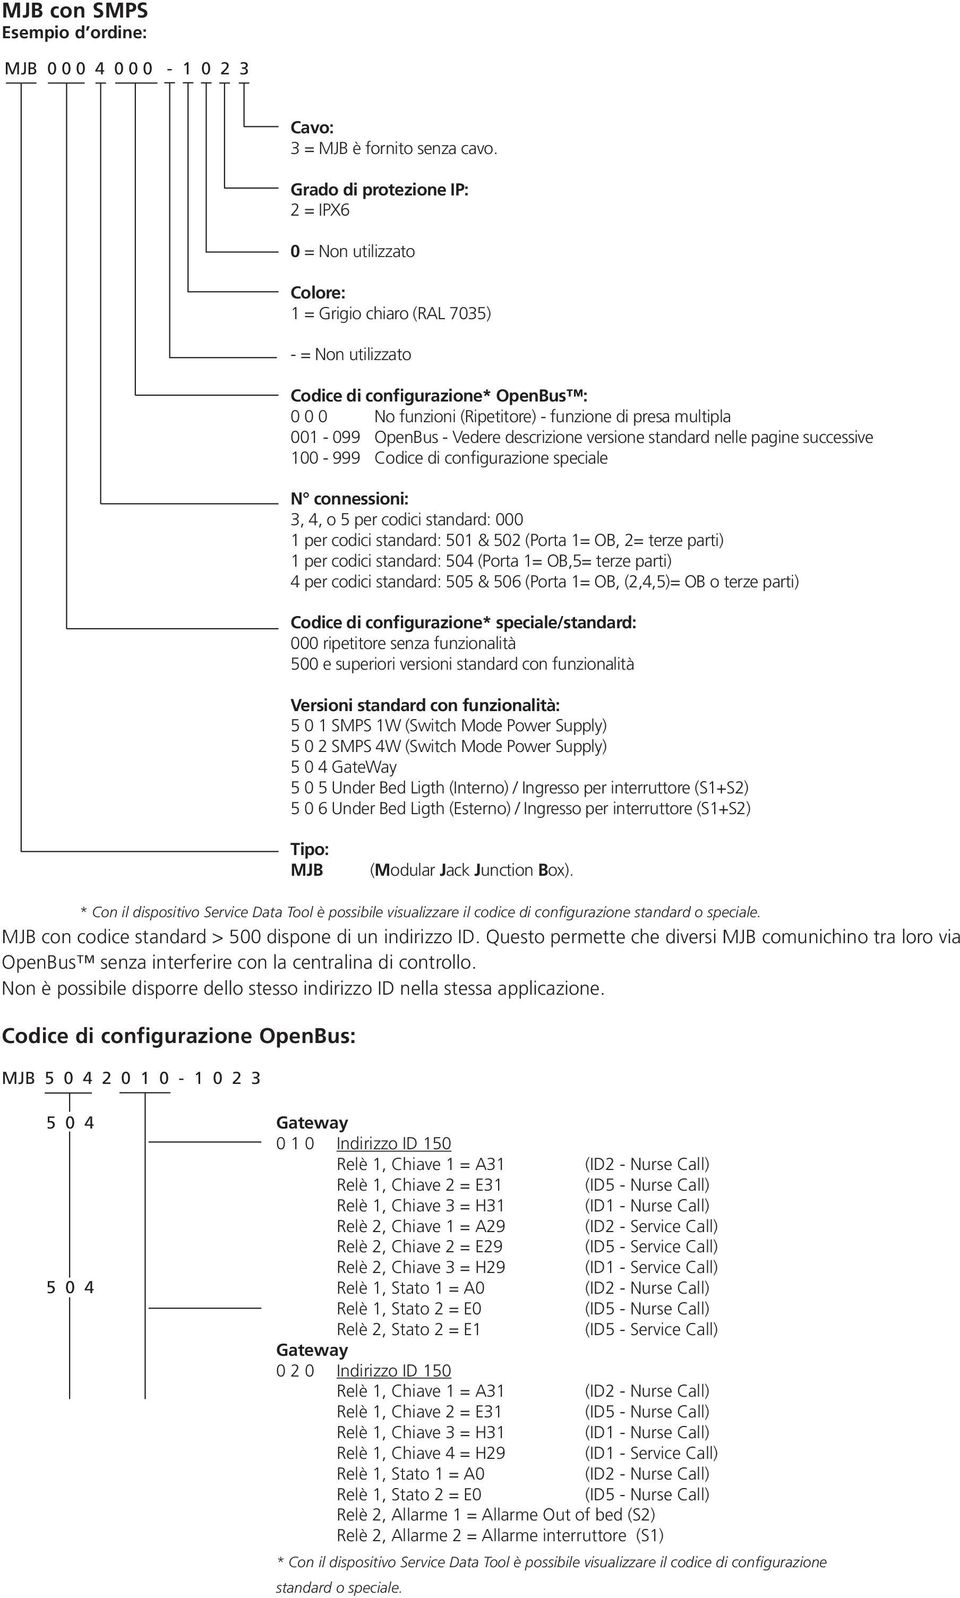 multipla 001-099 OpenBus - Vedere descrizione versione standard nelle pagine successive 100-999 Codice di configurazione speciale N connessioni: 3, 4, o 5 per codici standard: 000 1 per codici